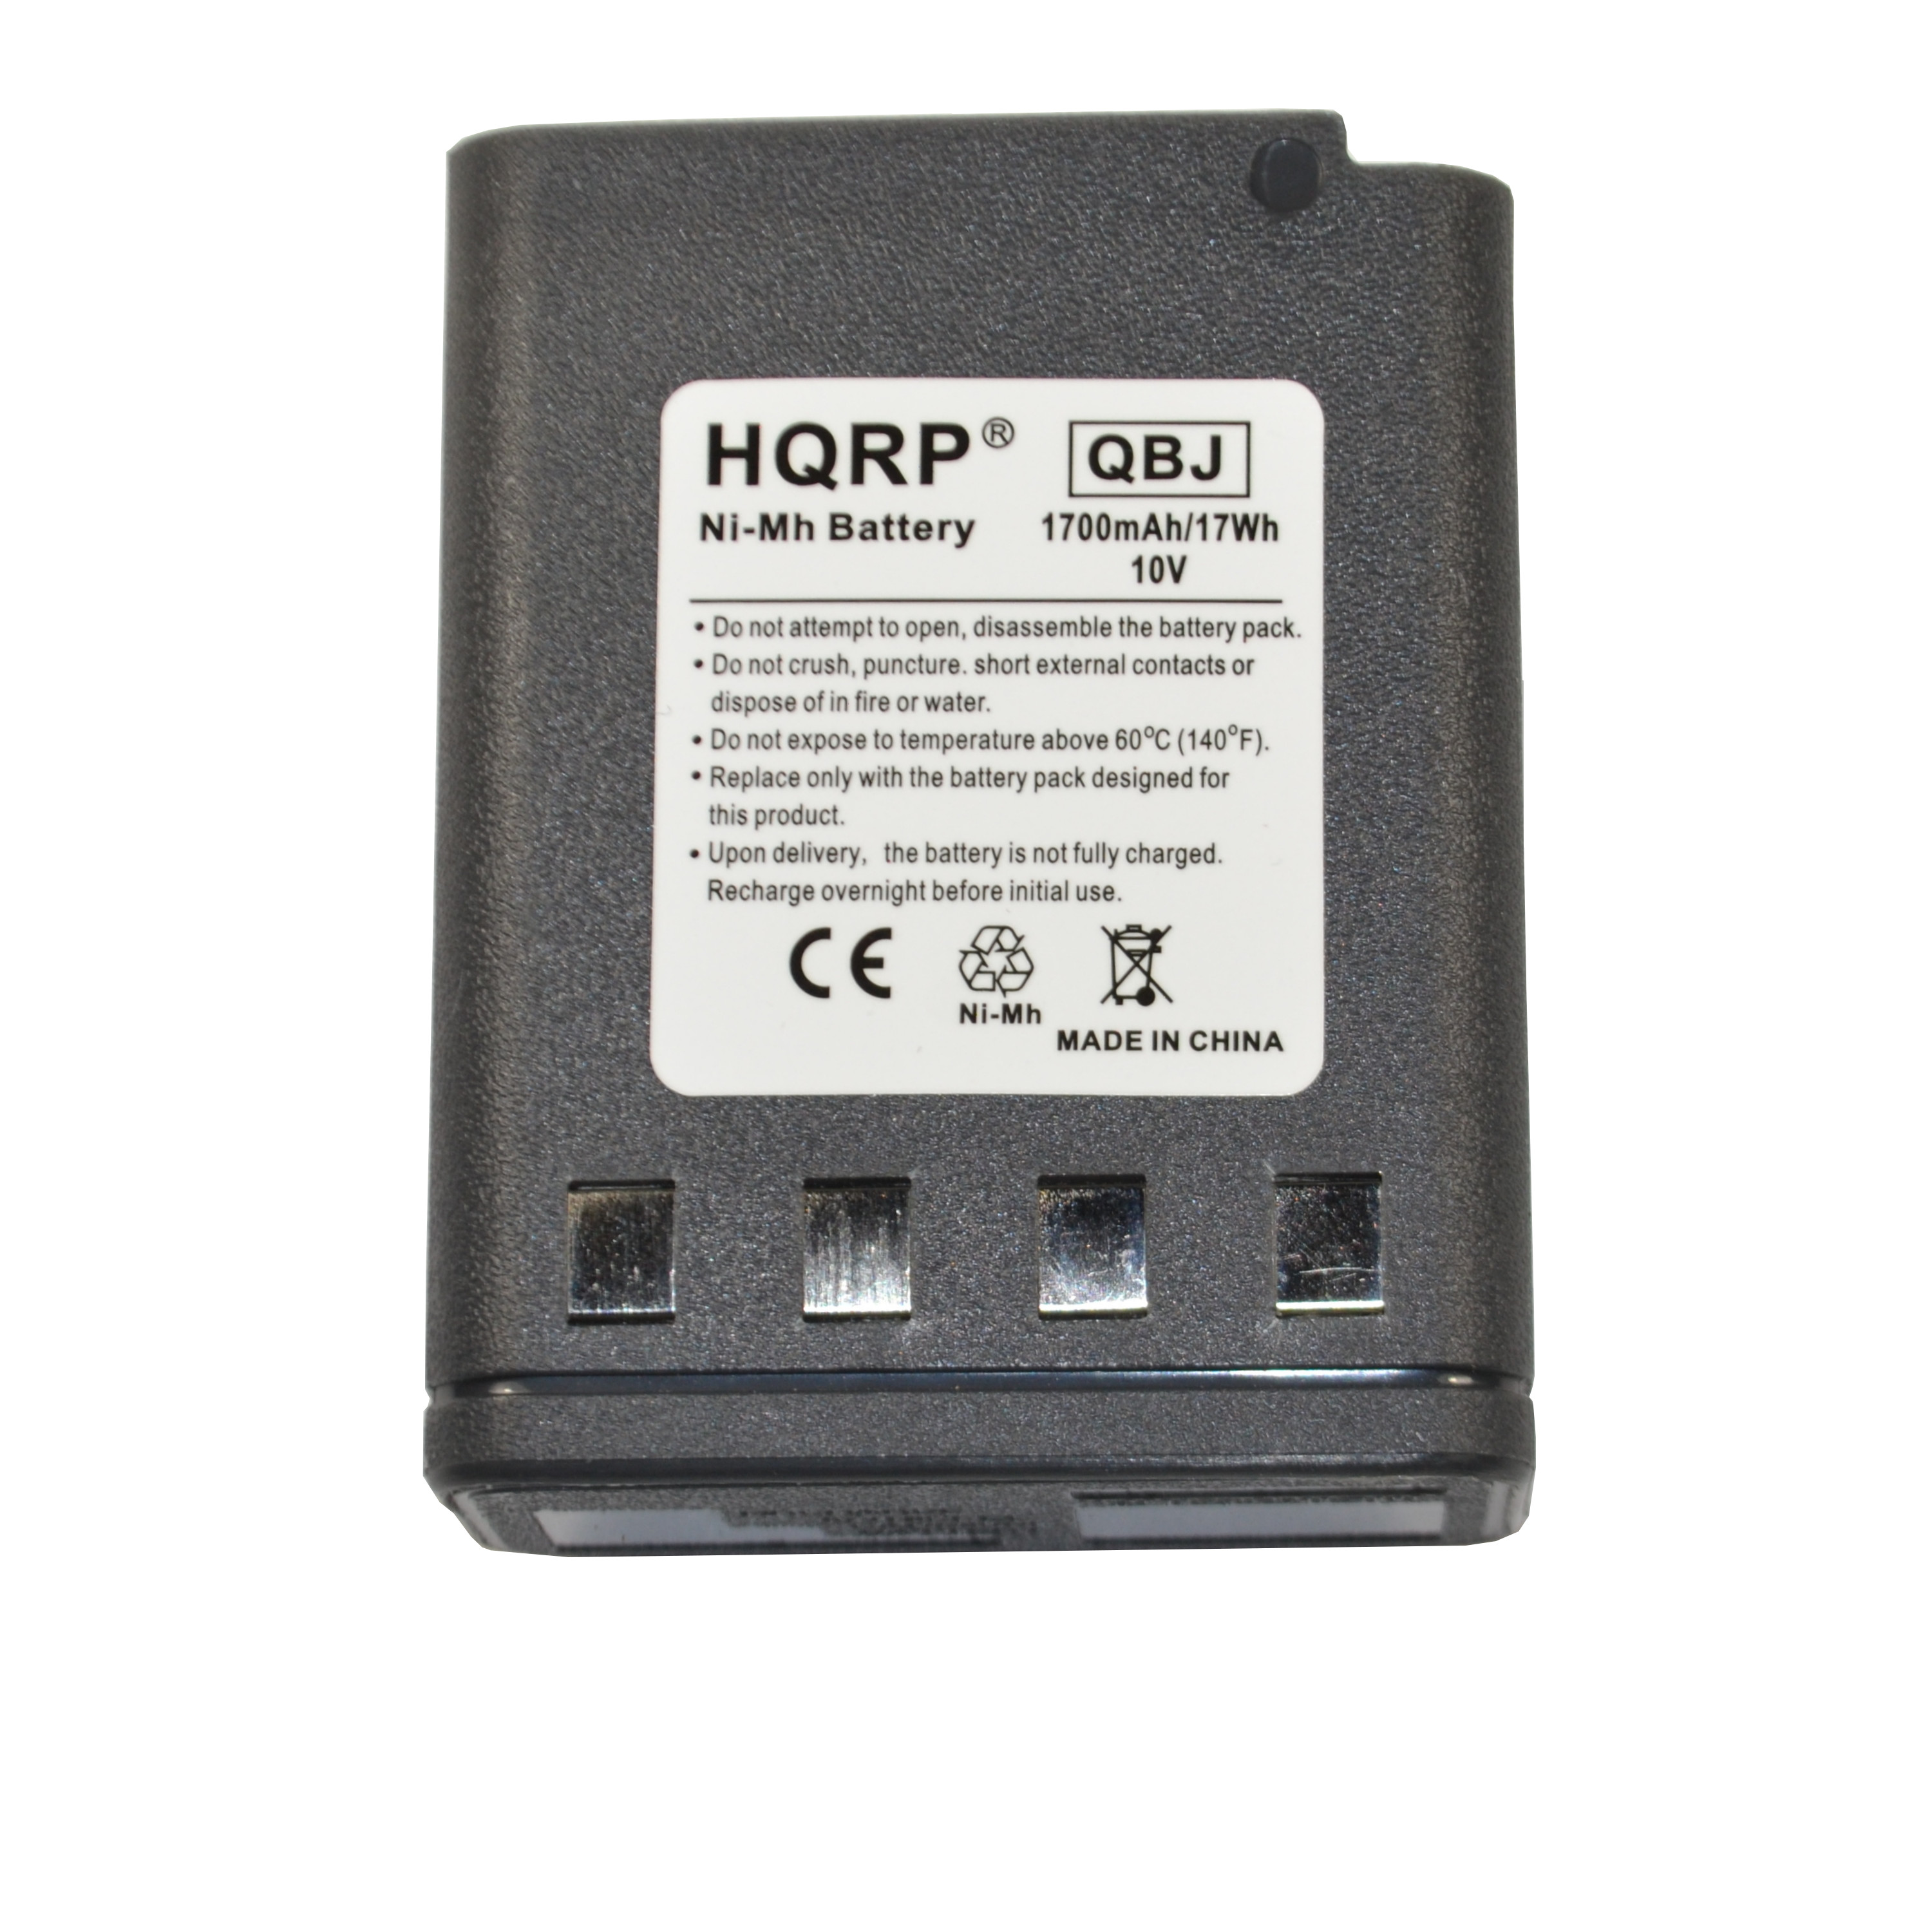 HQRP 1700mAh Battery for Motorola NTN5521B / NTN5531A / NTN5531B / NTN5048 / NTN5049 - image 1 of 6